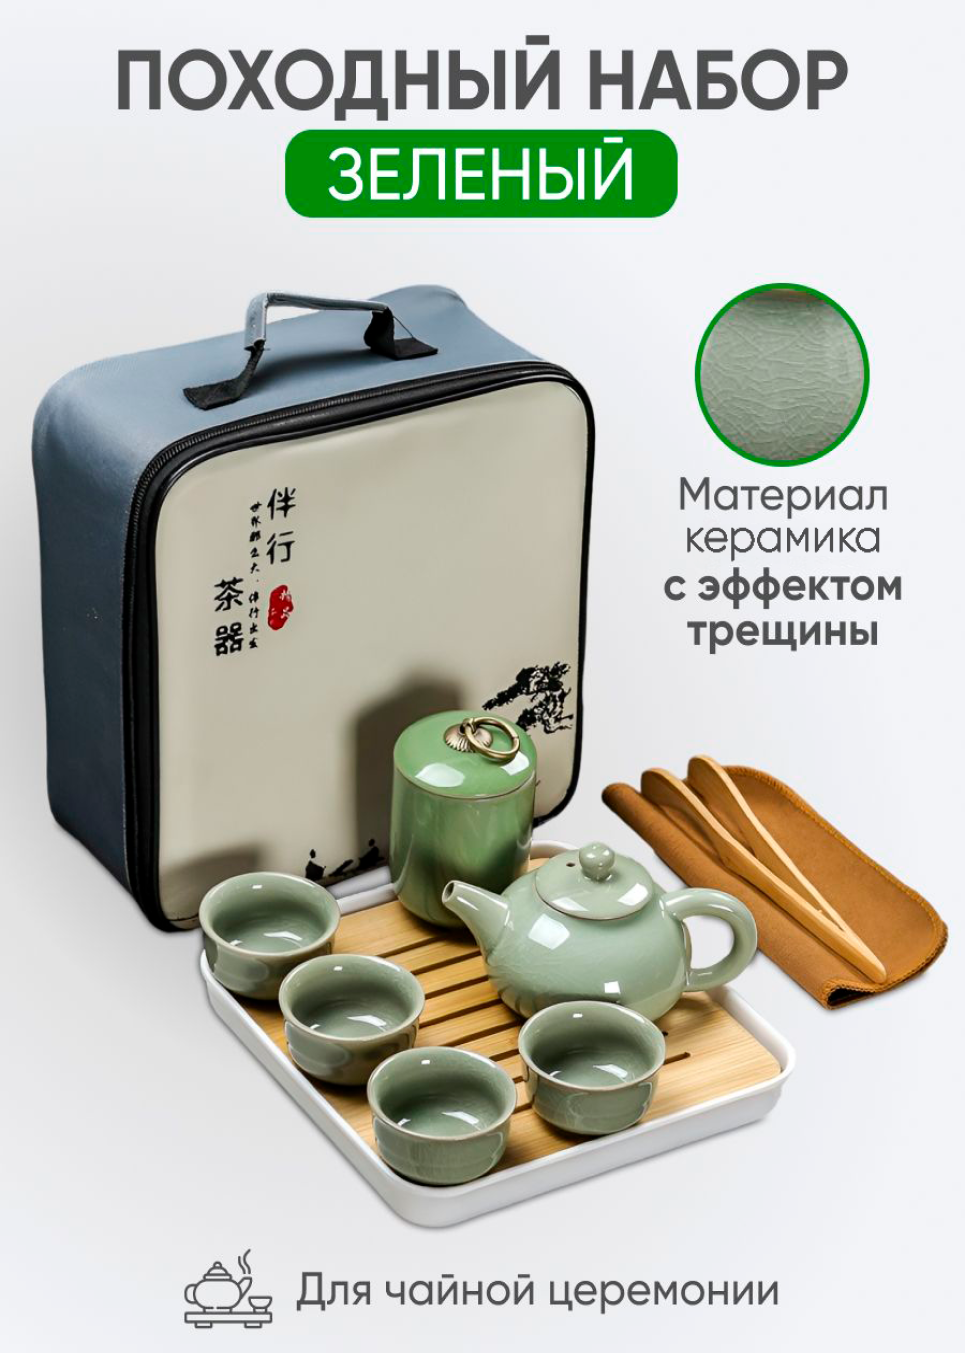 Набор для чайной церемонии "Зеленый" с банкой для чая